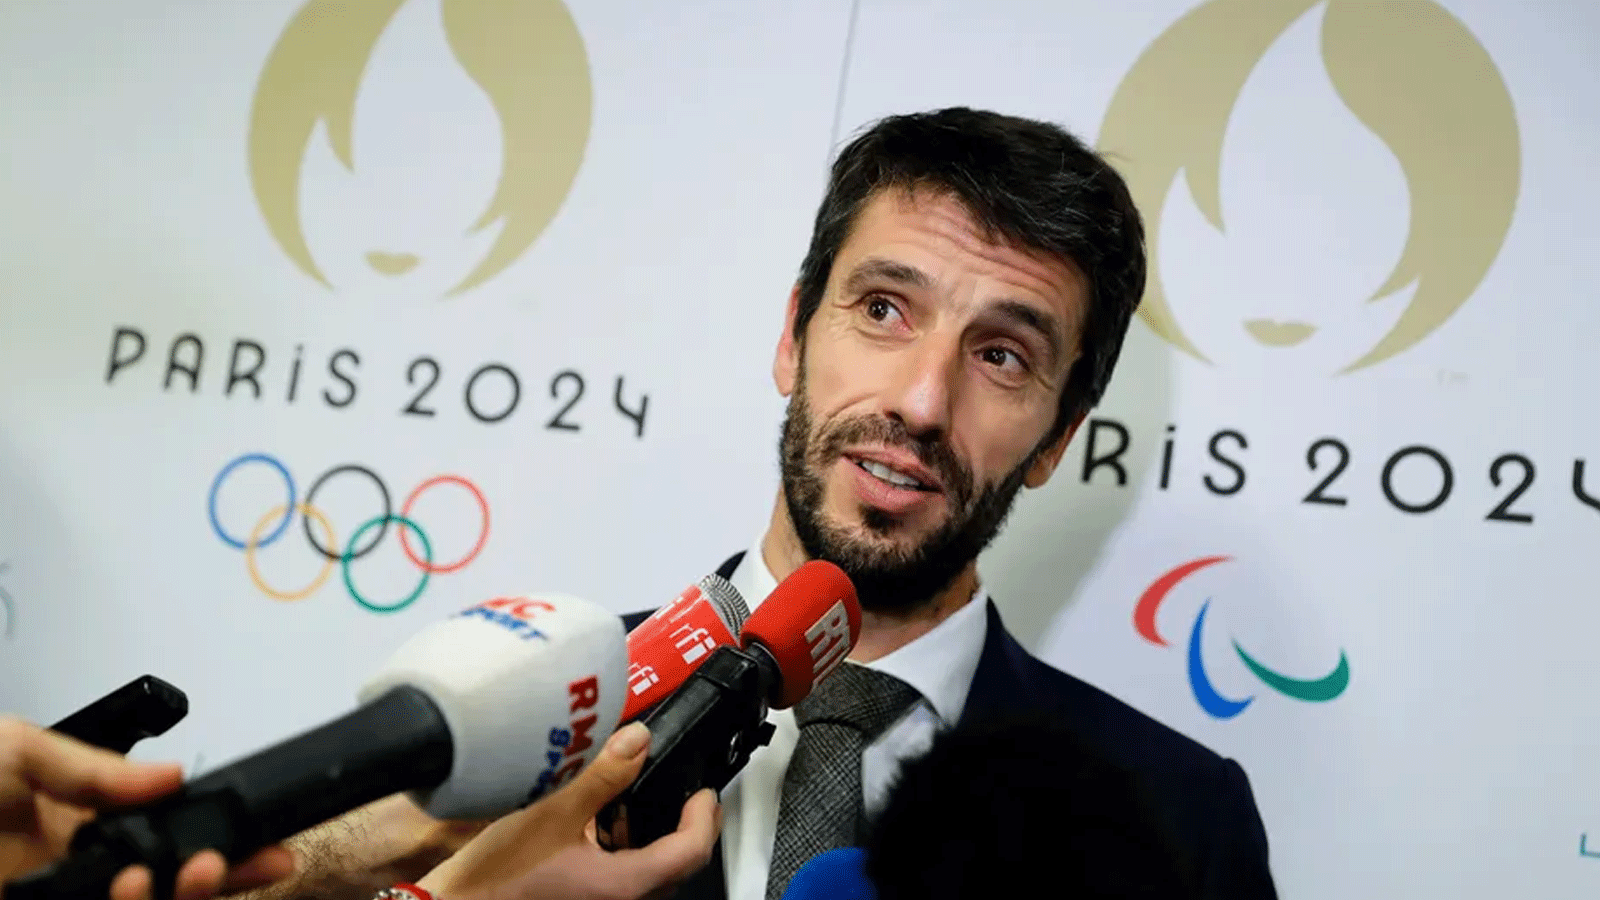 رئيس اللجنة المنظمة لأولمبياد باريس توني إستانغيه 